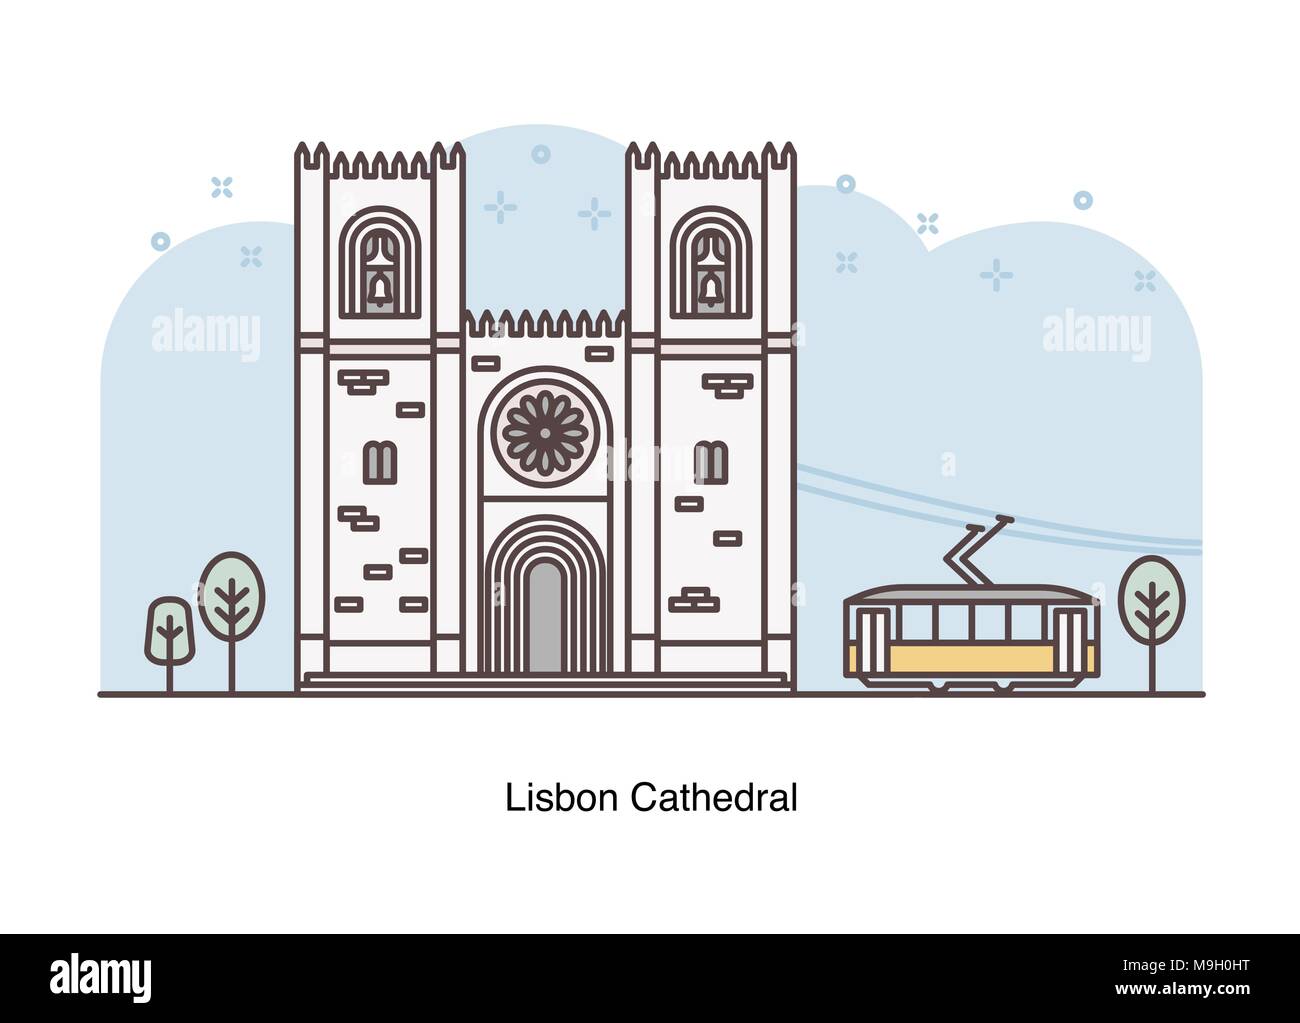 Vektor veranschaulicht die Kathedrale von Lissabon, Lissabon, Portugal. Stock Vektor